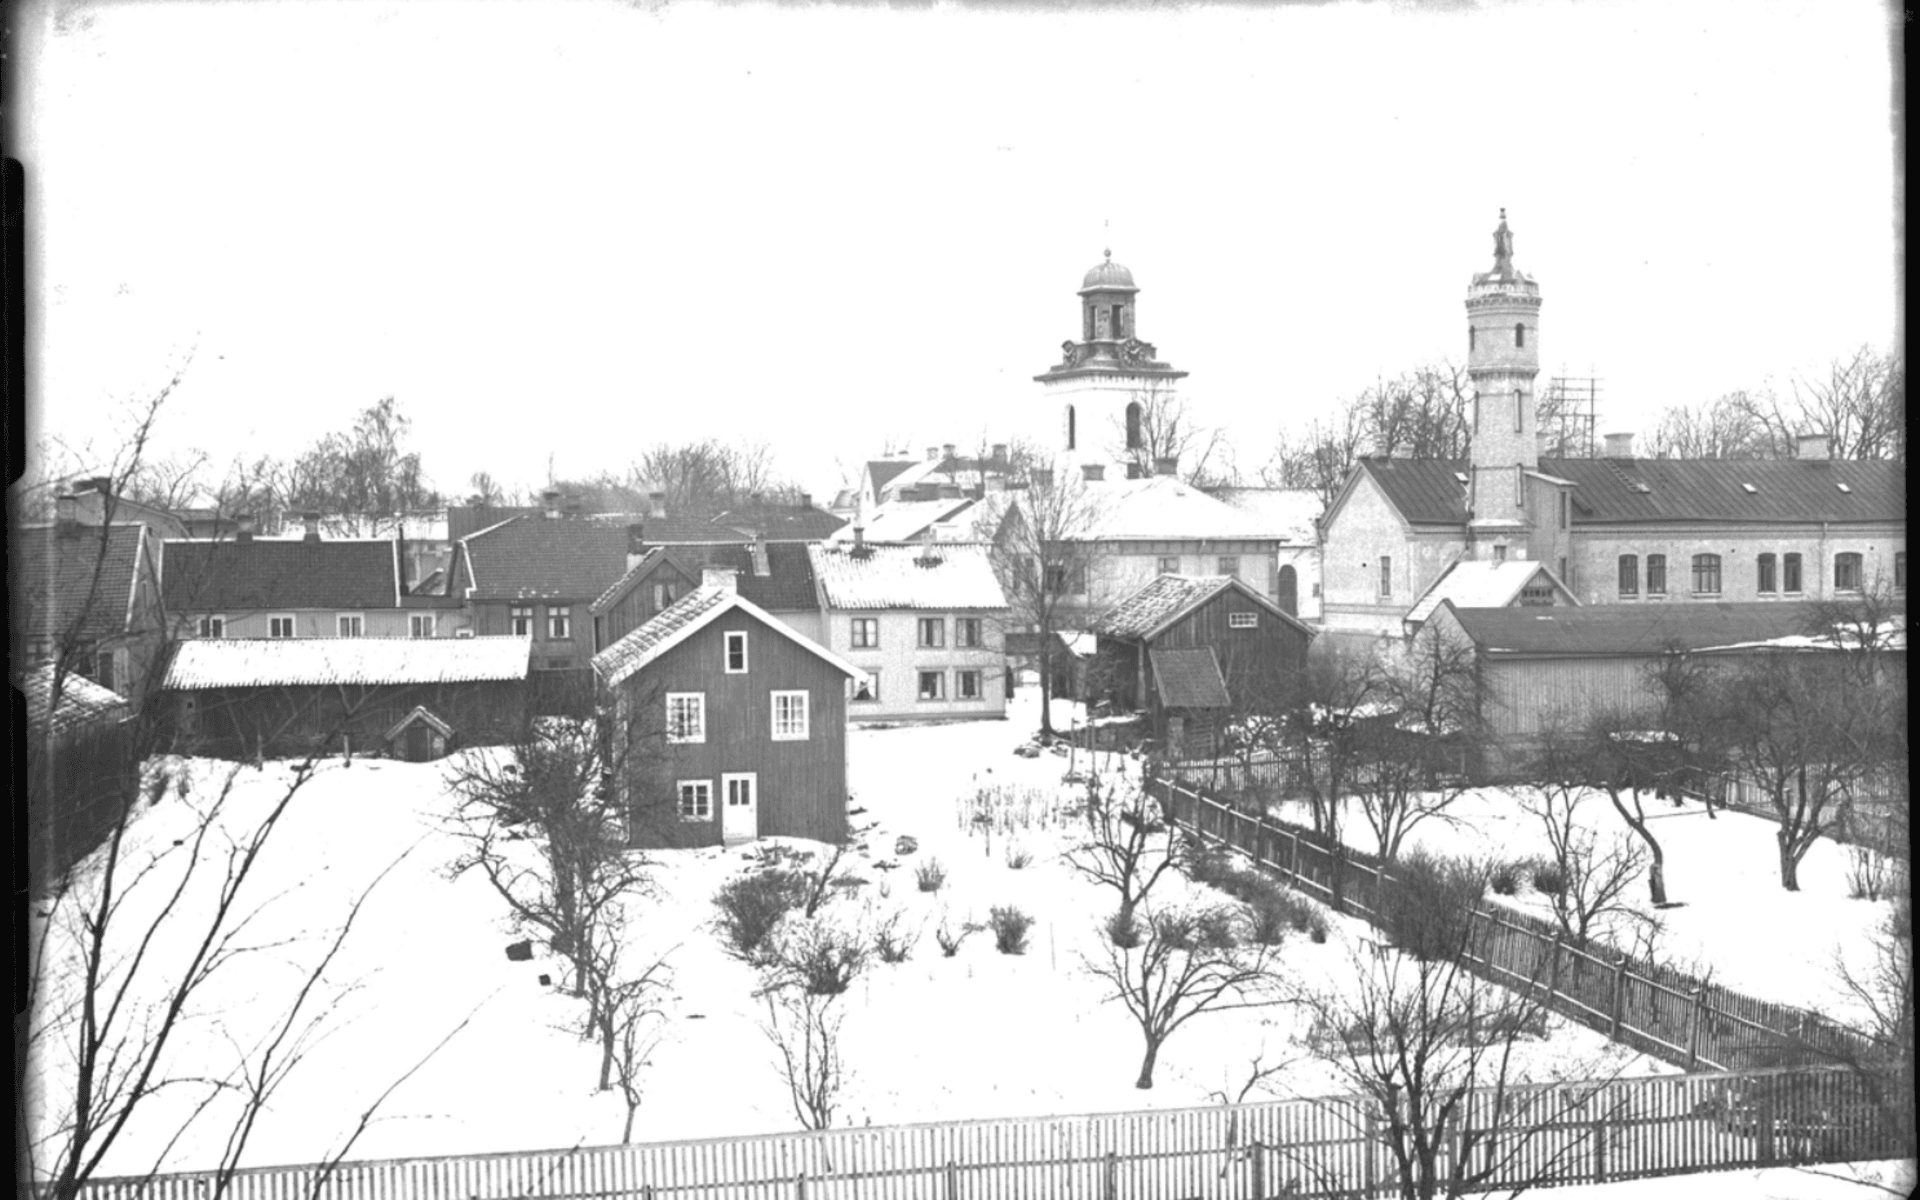 Fotografi taget från Bomullsväveriets tak med utsikt mot kyrkan och Väktaregården med dess torn. Fotografering - 26 februari 1924.